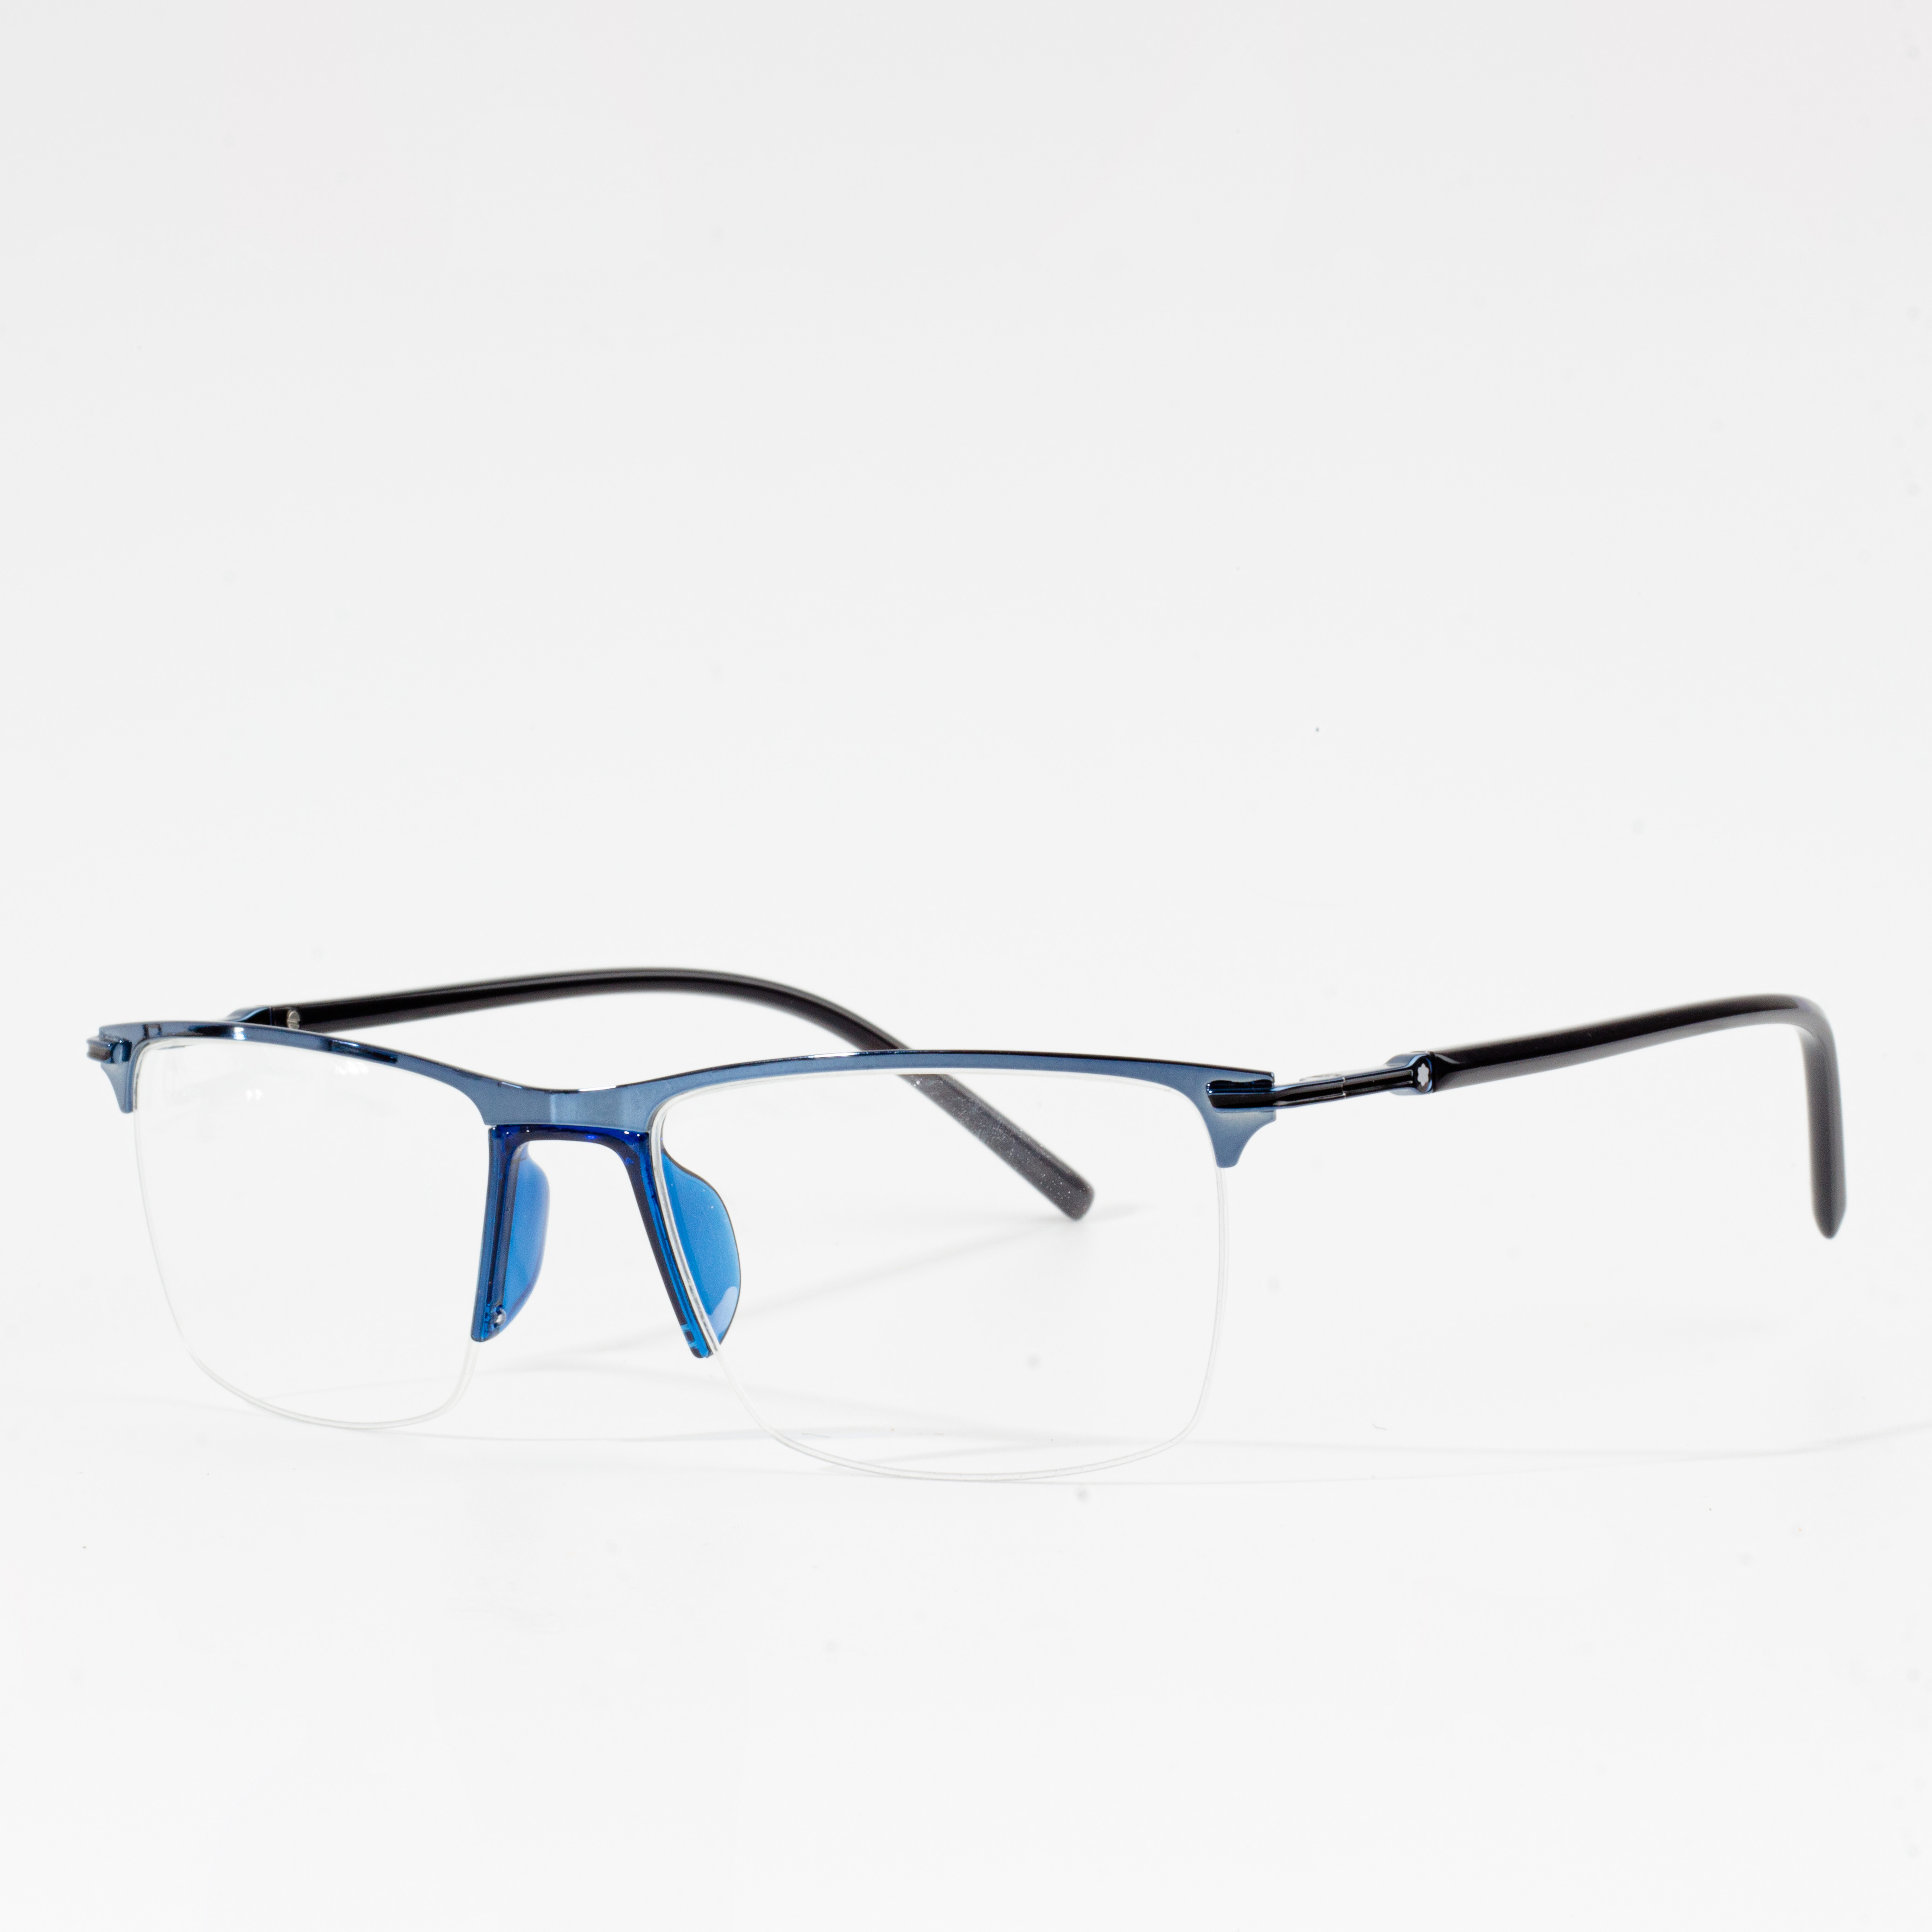 Bingkai Kacamata Optik Tontonan